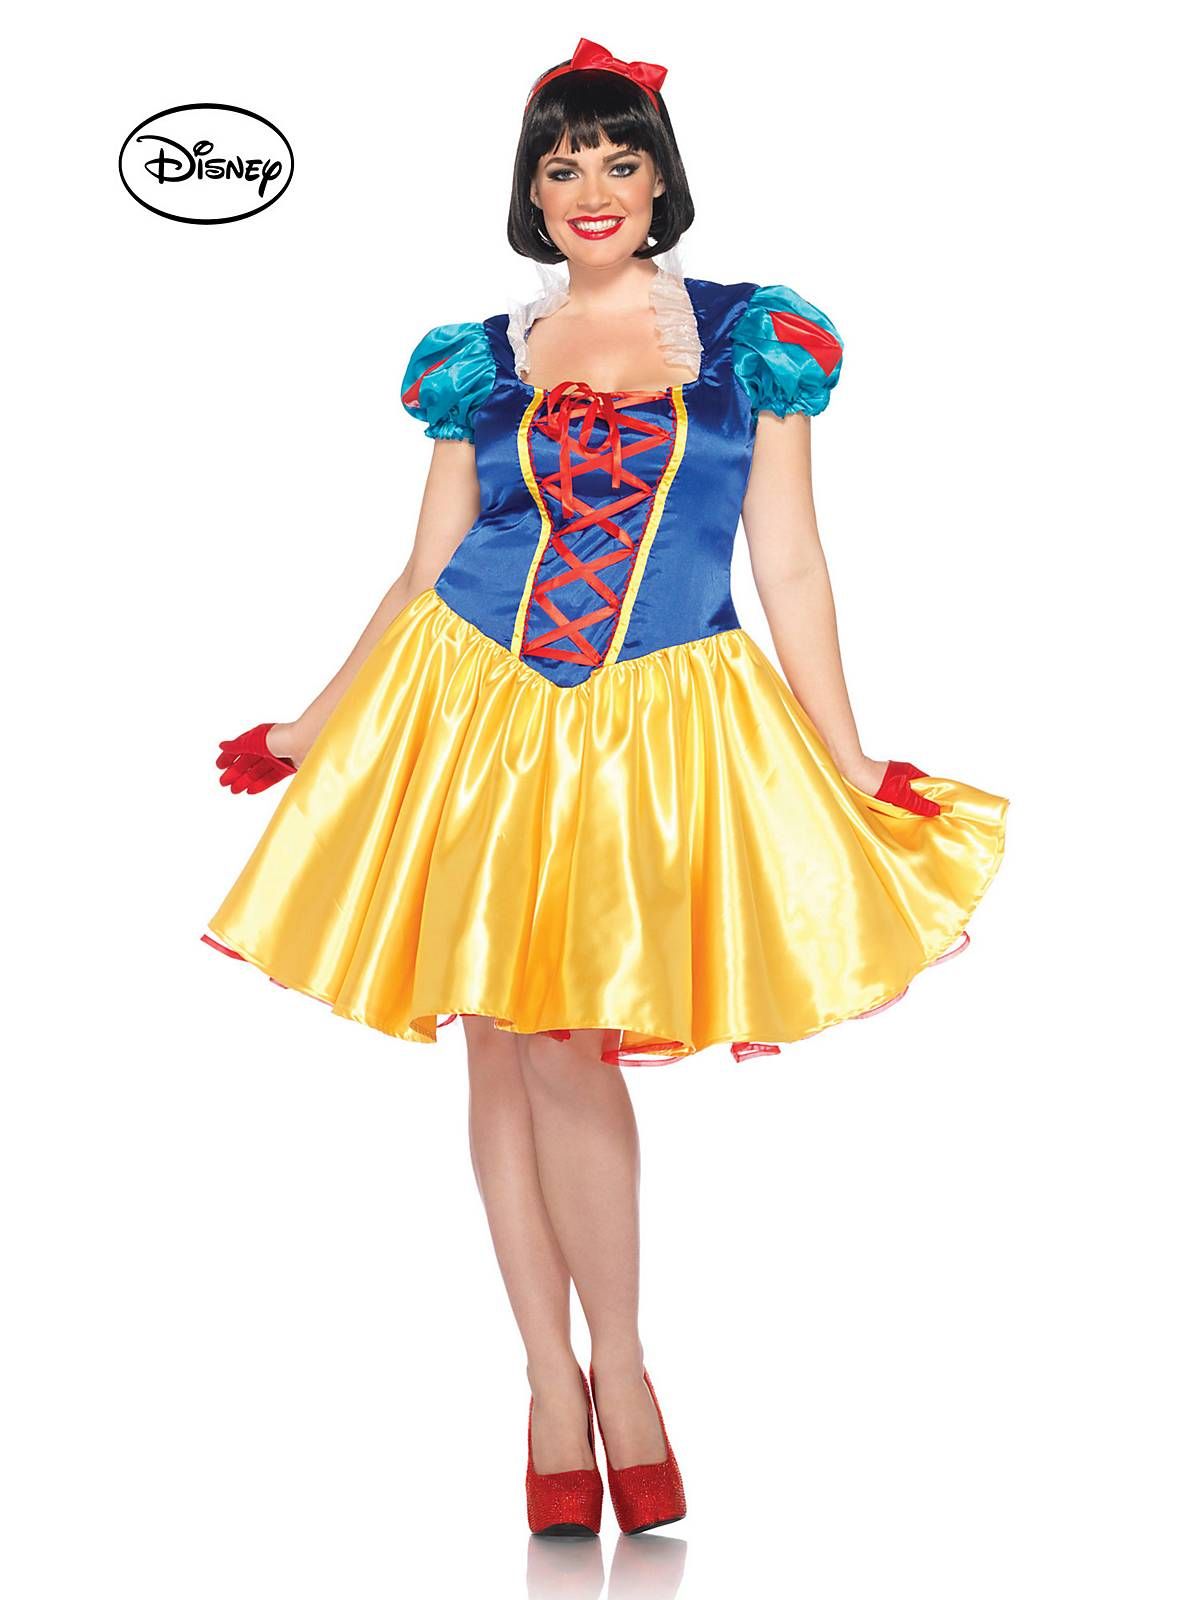 Disney snow white costumes plus size